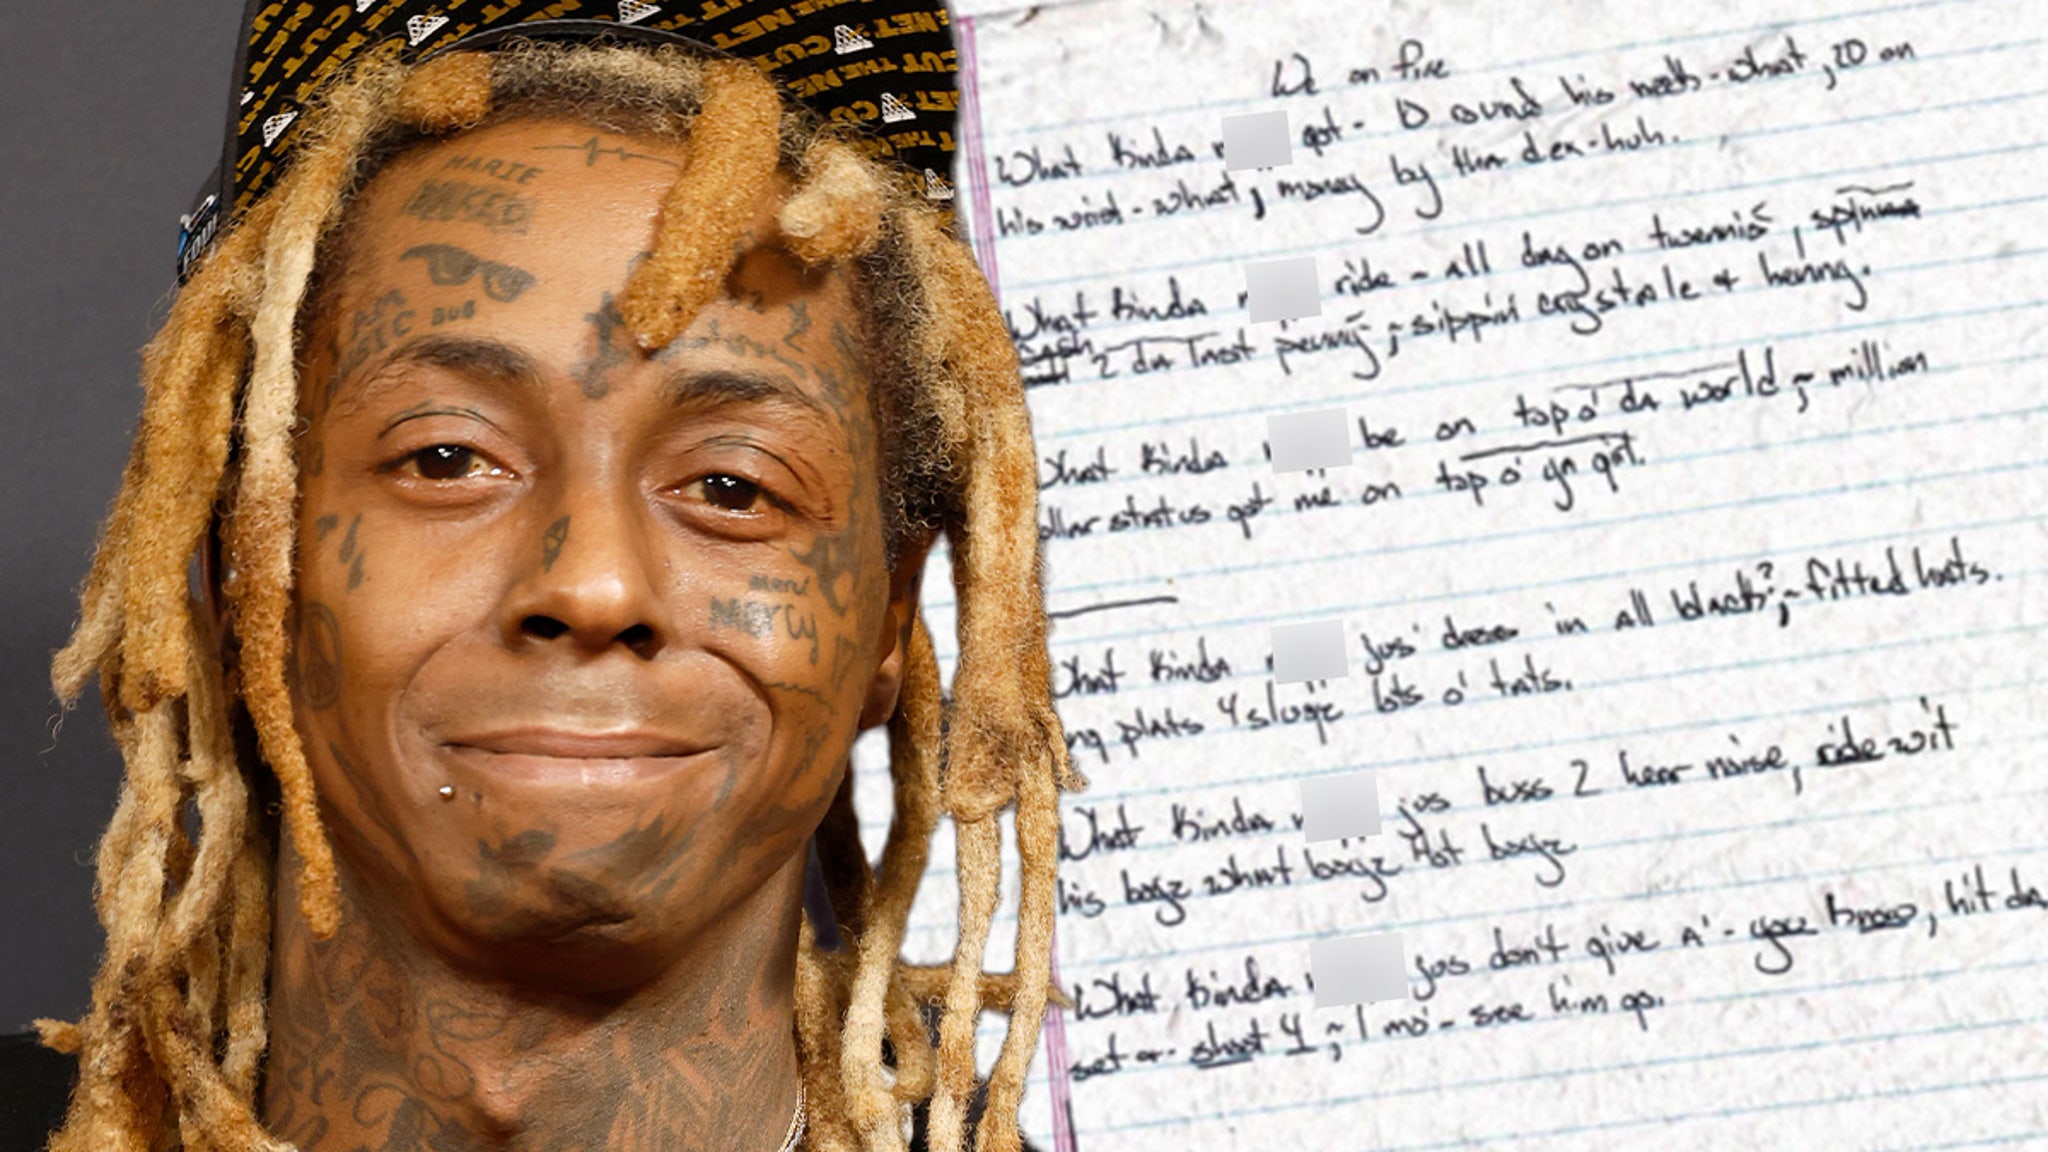 Lil Wayne Old Lyric Notebook on Sale for  Million After Legal Saga